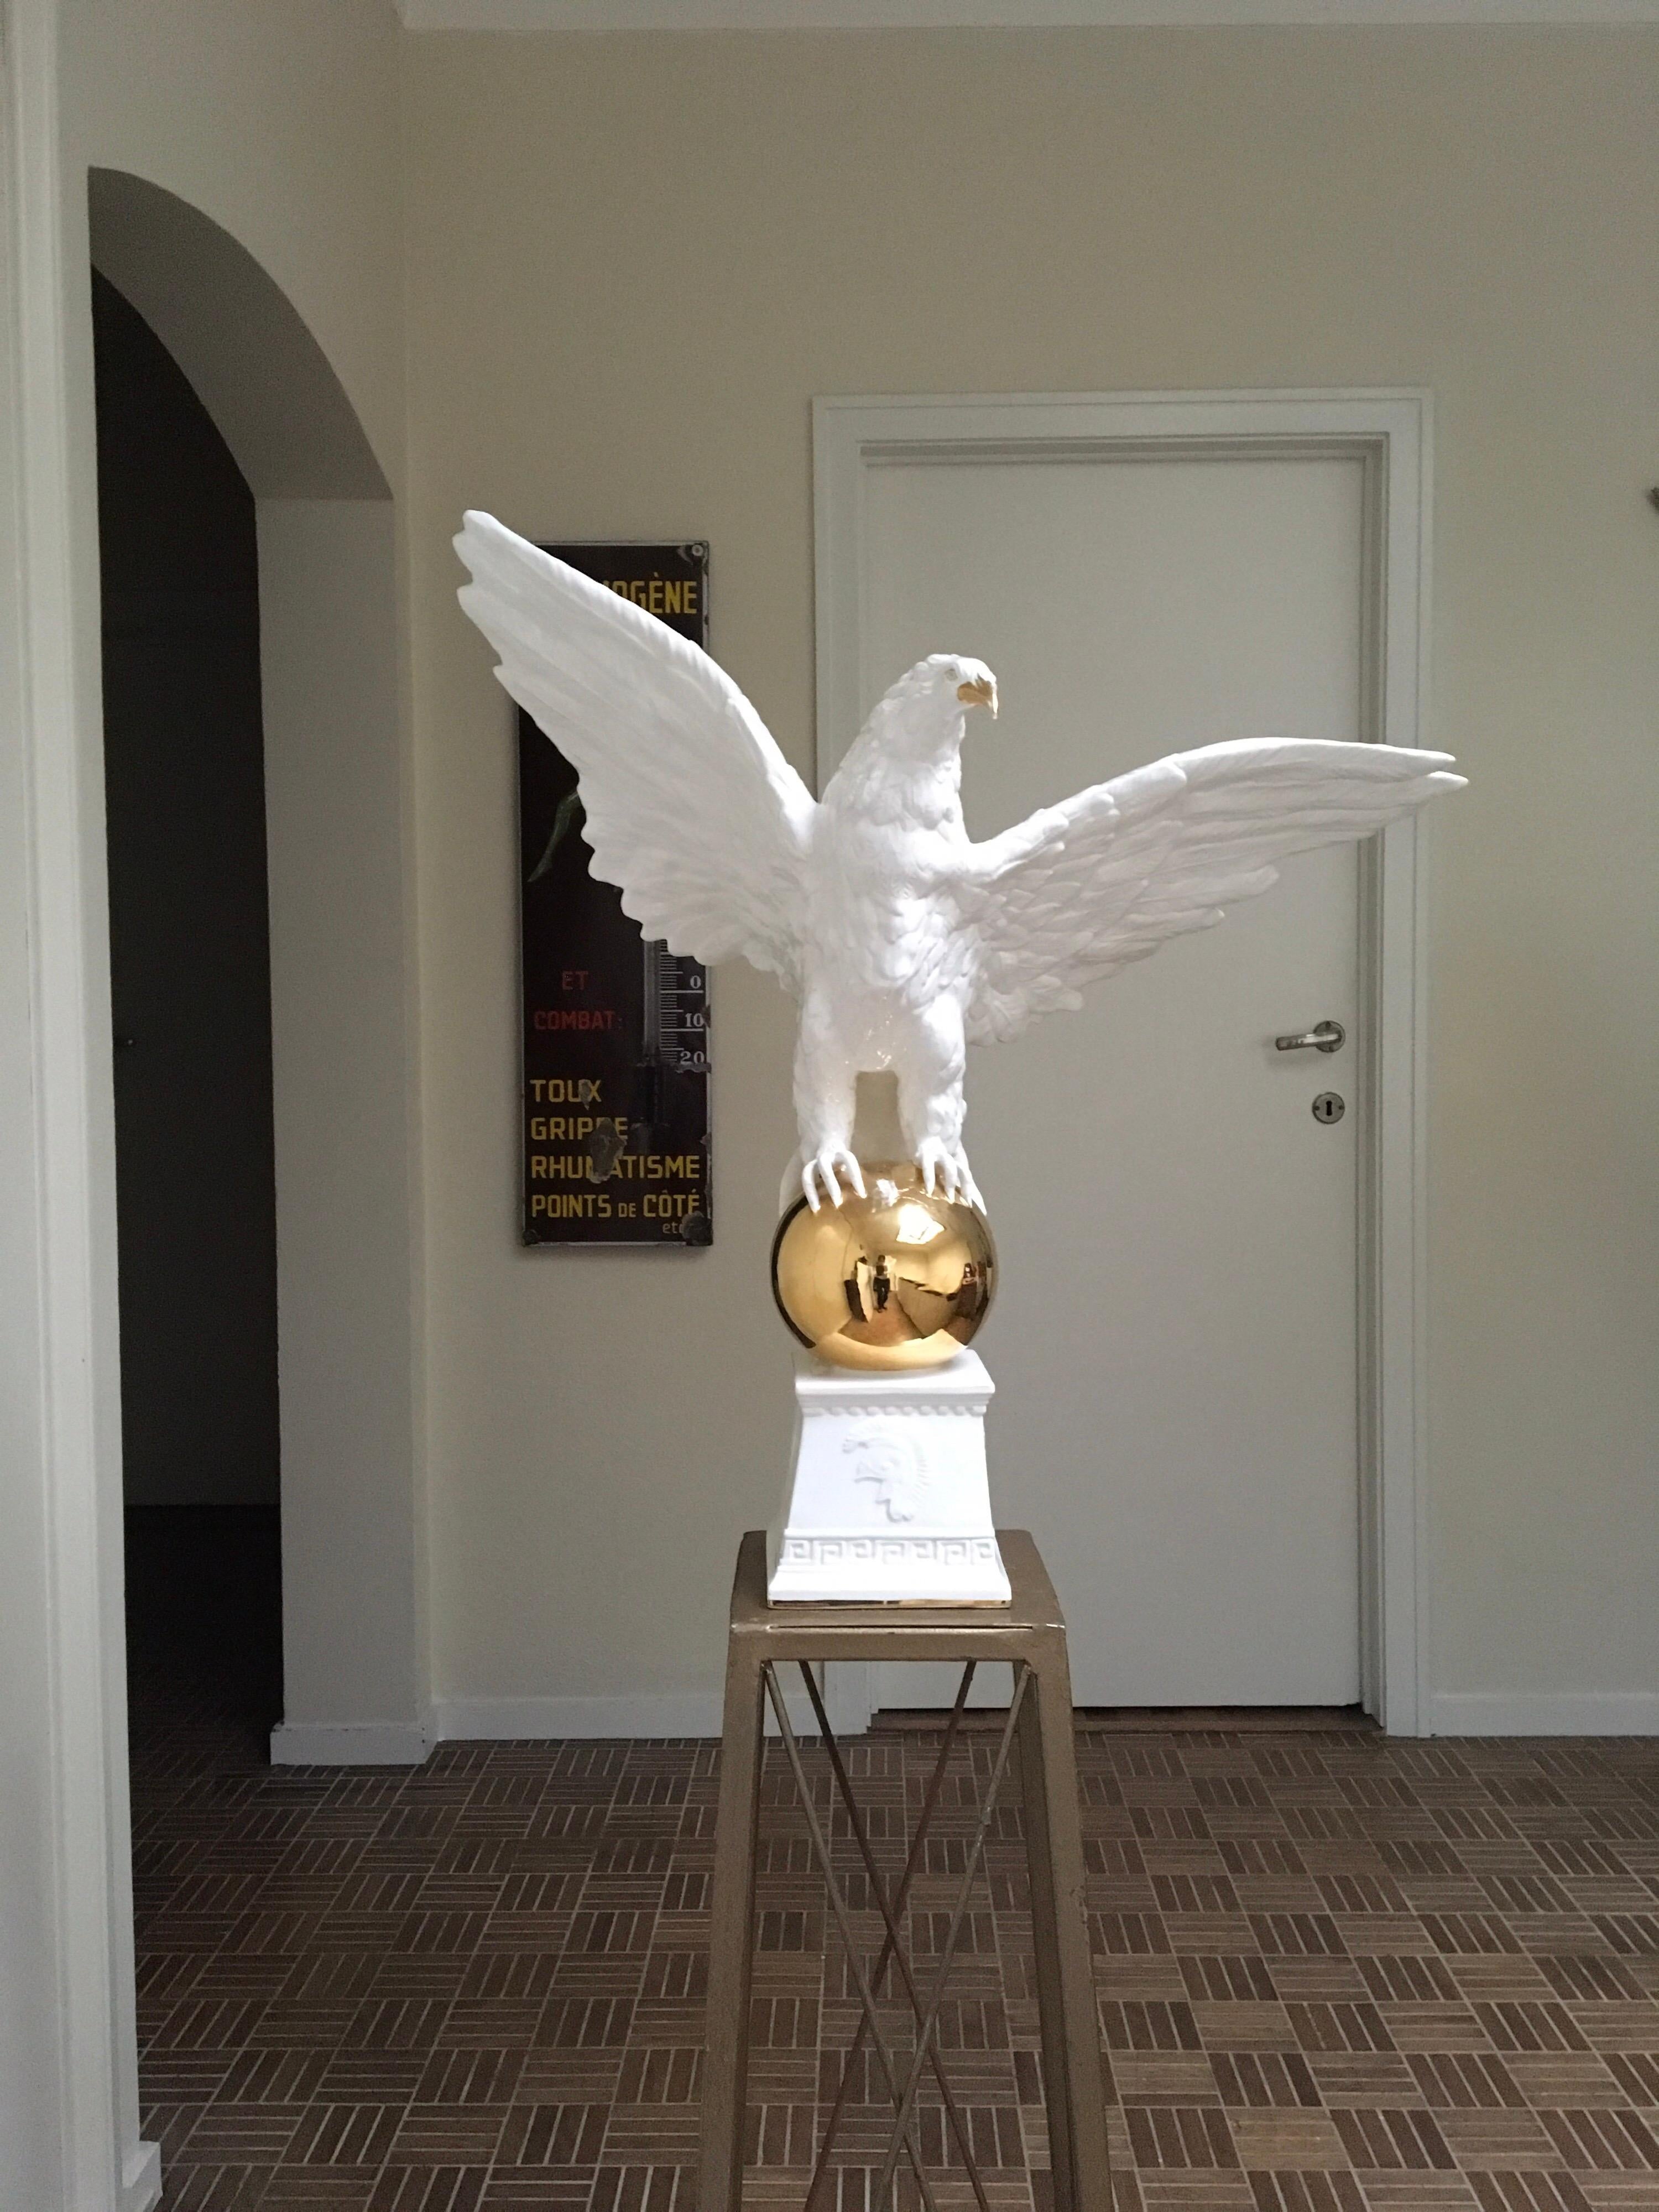 Beeindruckende große italienische Adlerstatue - Adlerskulptur mit ausgebreiteten Flügeln.
Hergestellt aus weißer Keramik mit handverzierten goldenen Details und Akzenten.
Vintage Keramik - Töpferwaren Made in Italy , wahrscheinlich von